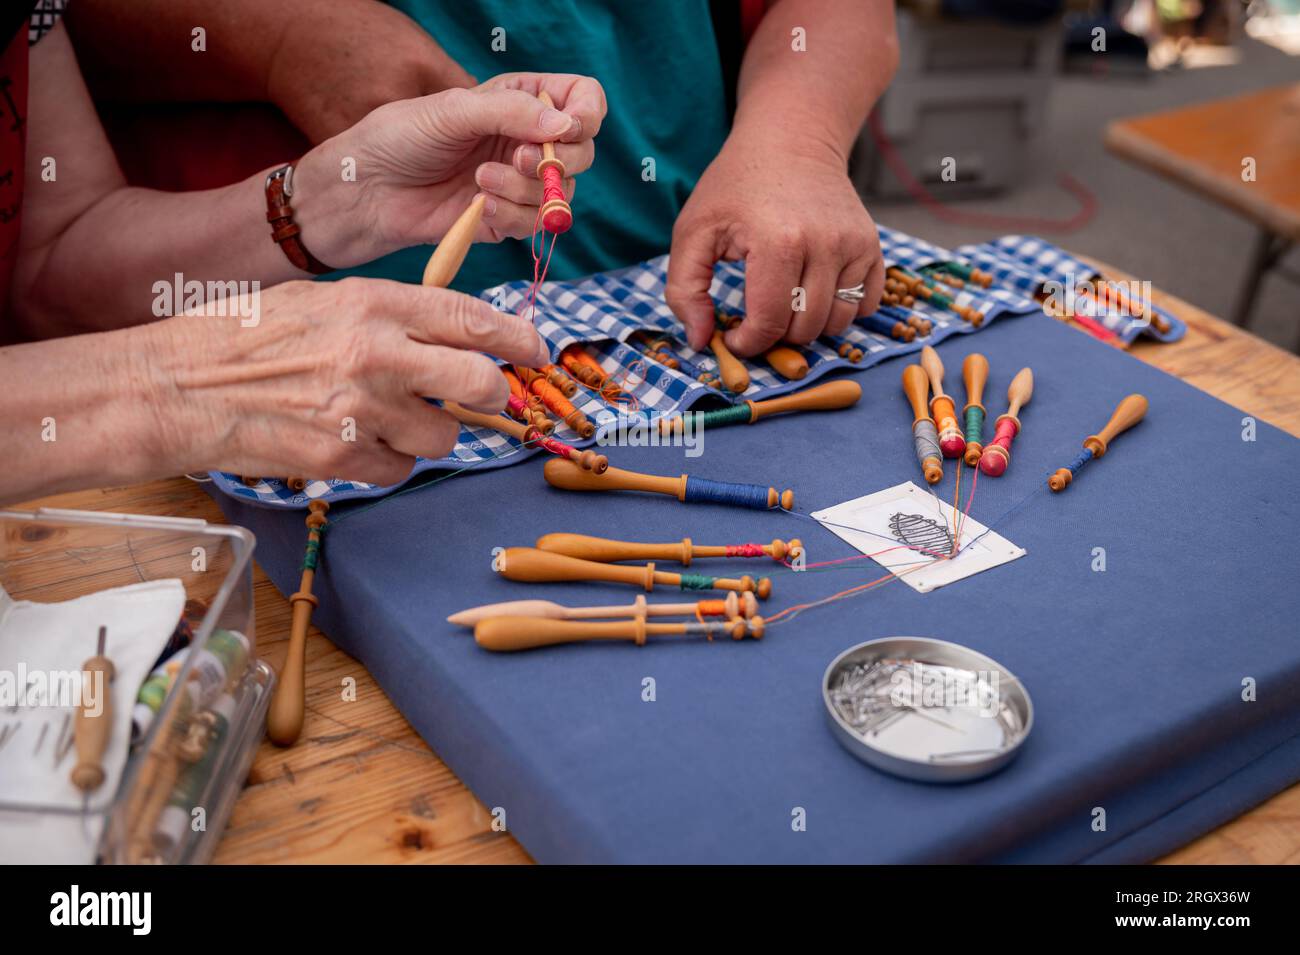 Hände von Menschen, die Spulenspitzen vorbereiten und herstellen. Farbenfrohe Spitzenfäden. Freizeitaktivität. Stockfoto